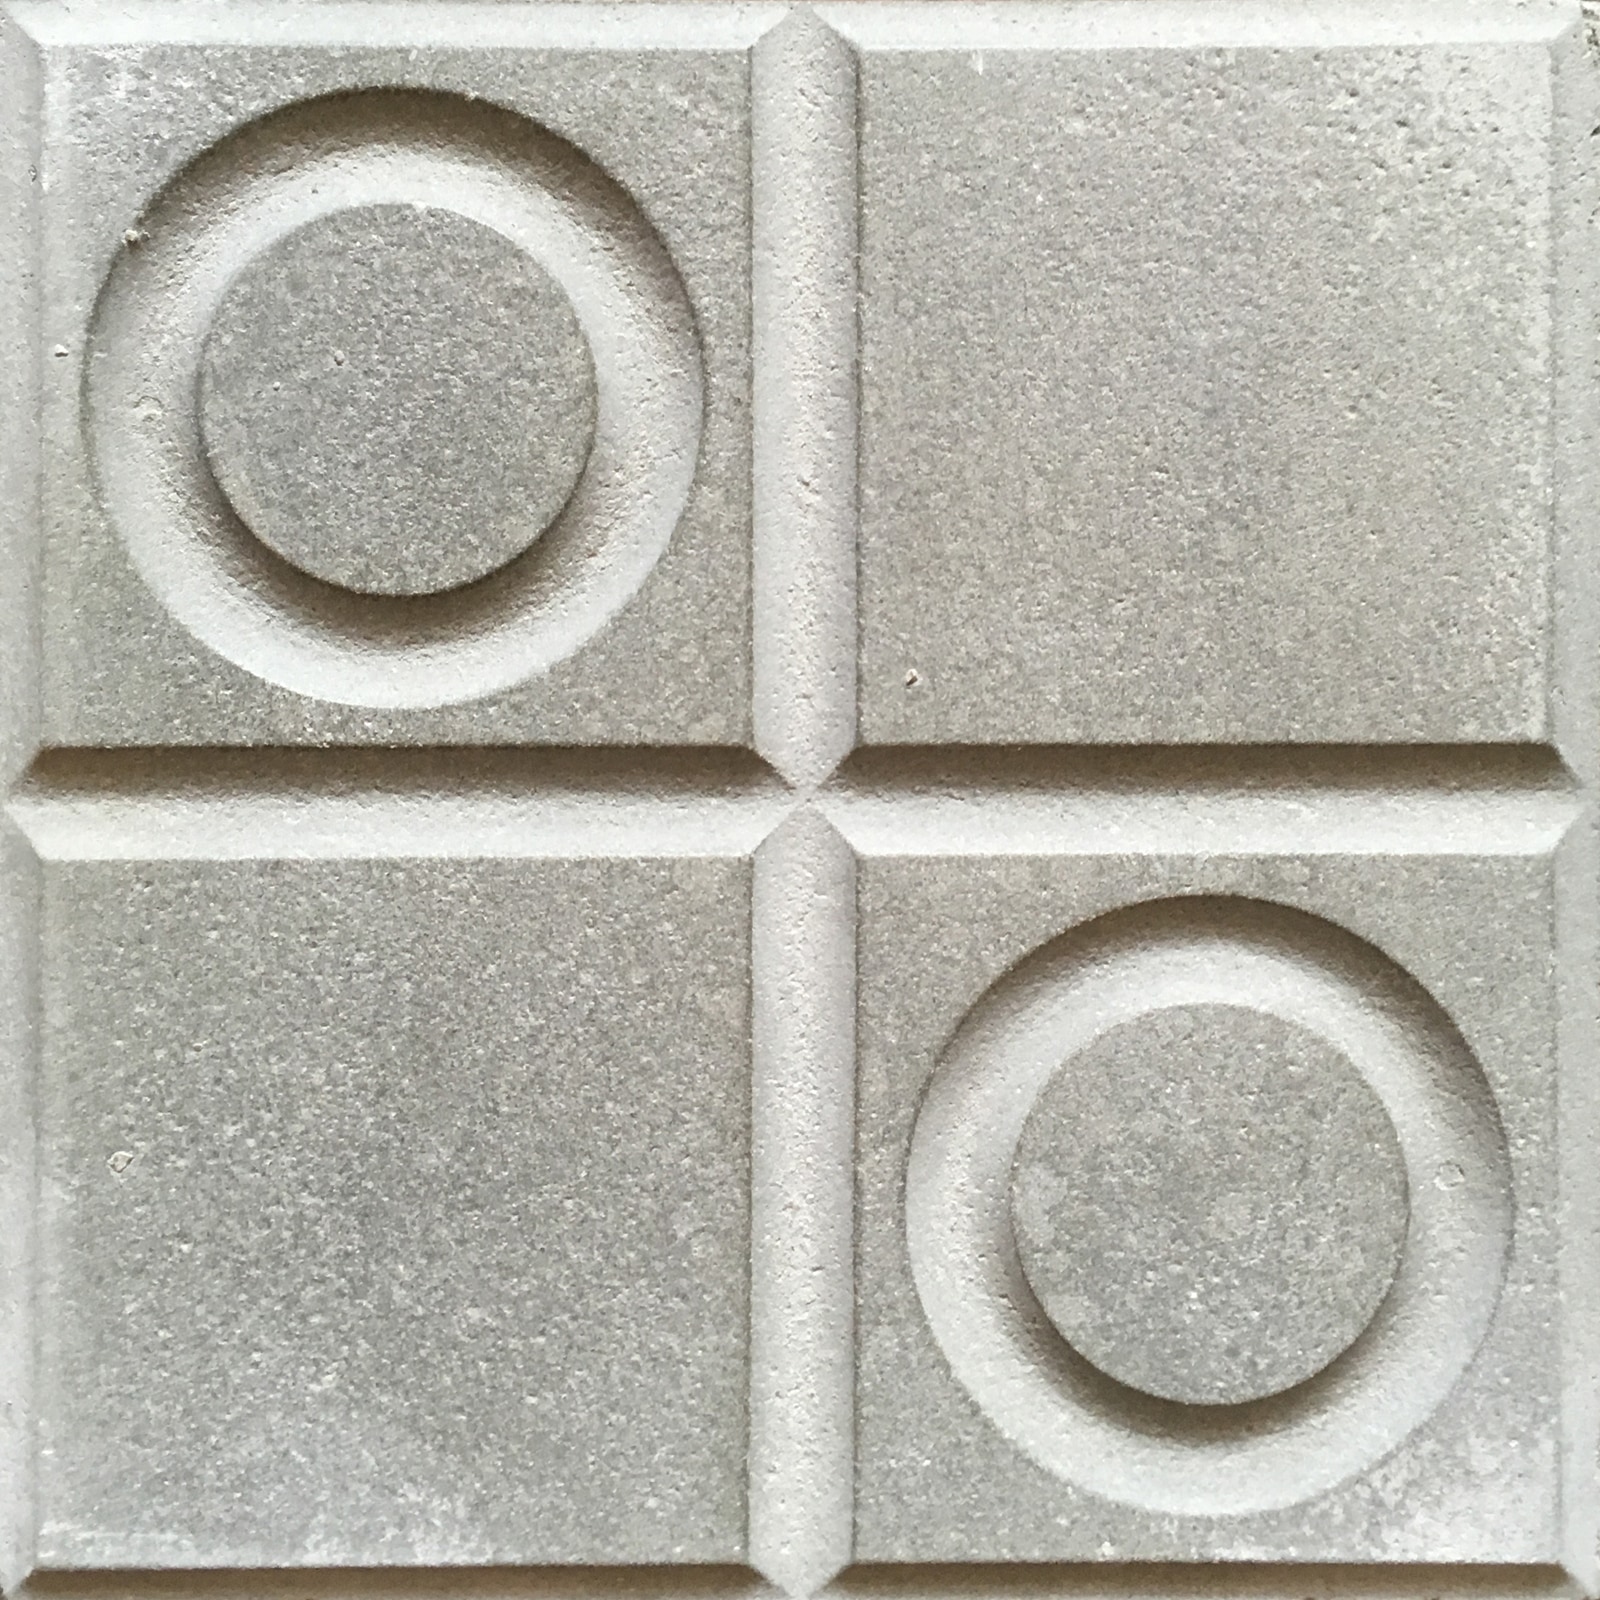 viergeteilte Trottoirplatte mit zwei Kreisen